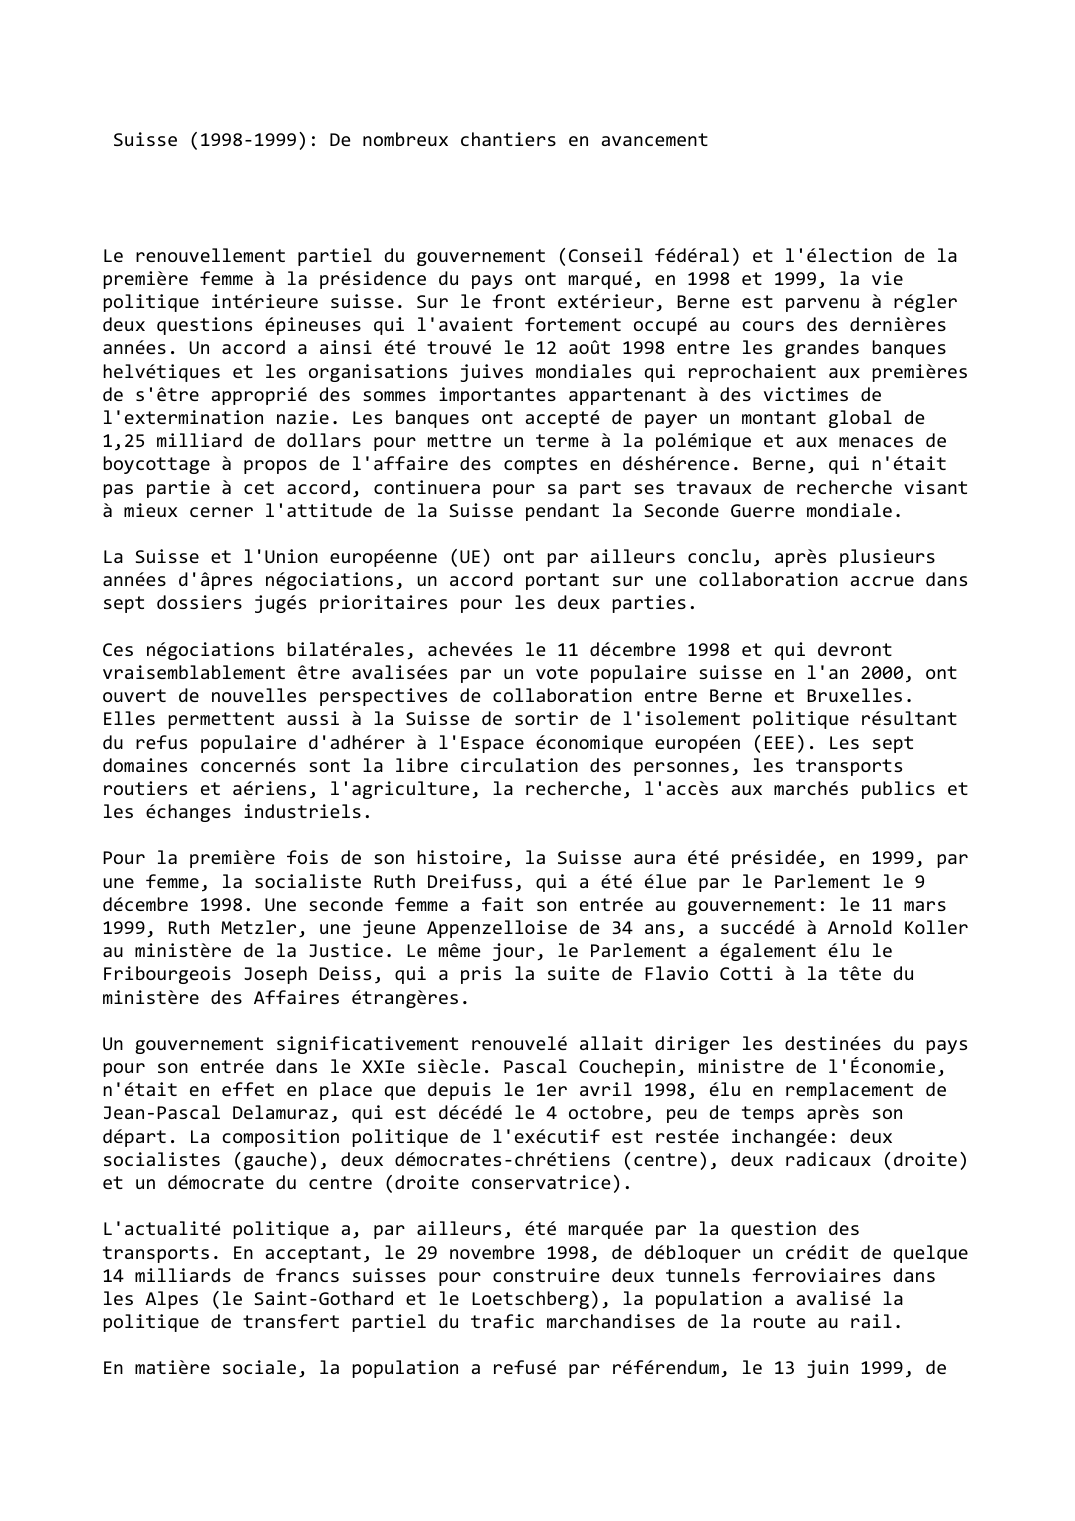 Prévisualisation du document Suisse (1998-1999): De nombreux chantiers en avancement